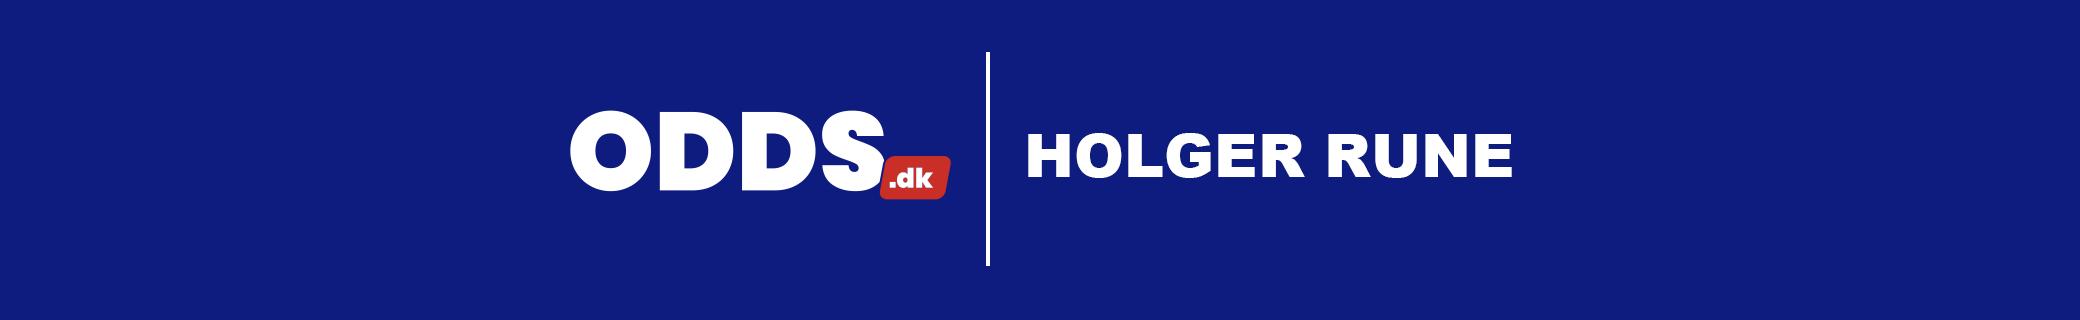 Holger Rune: Streaming og TV